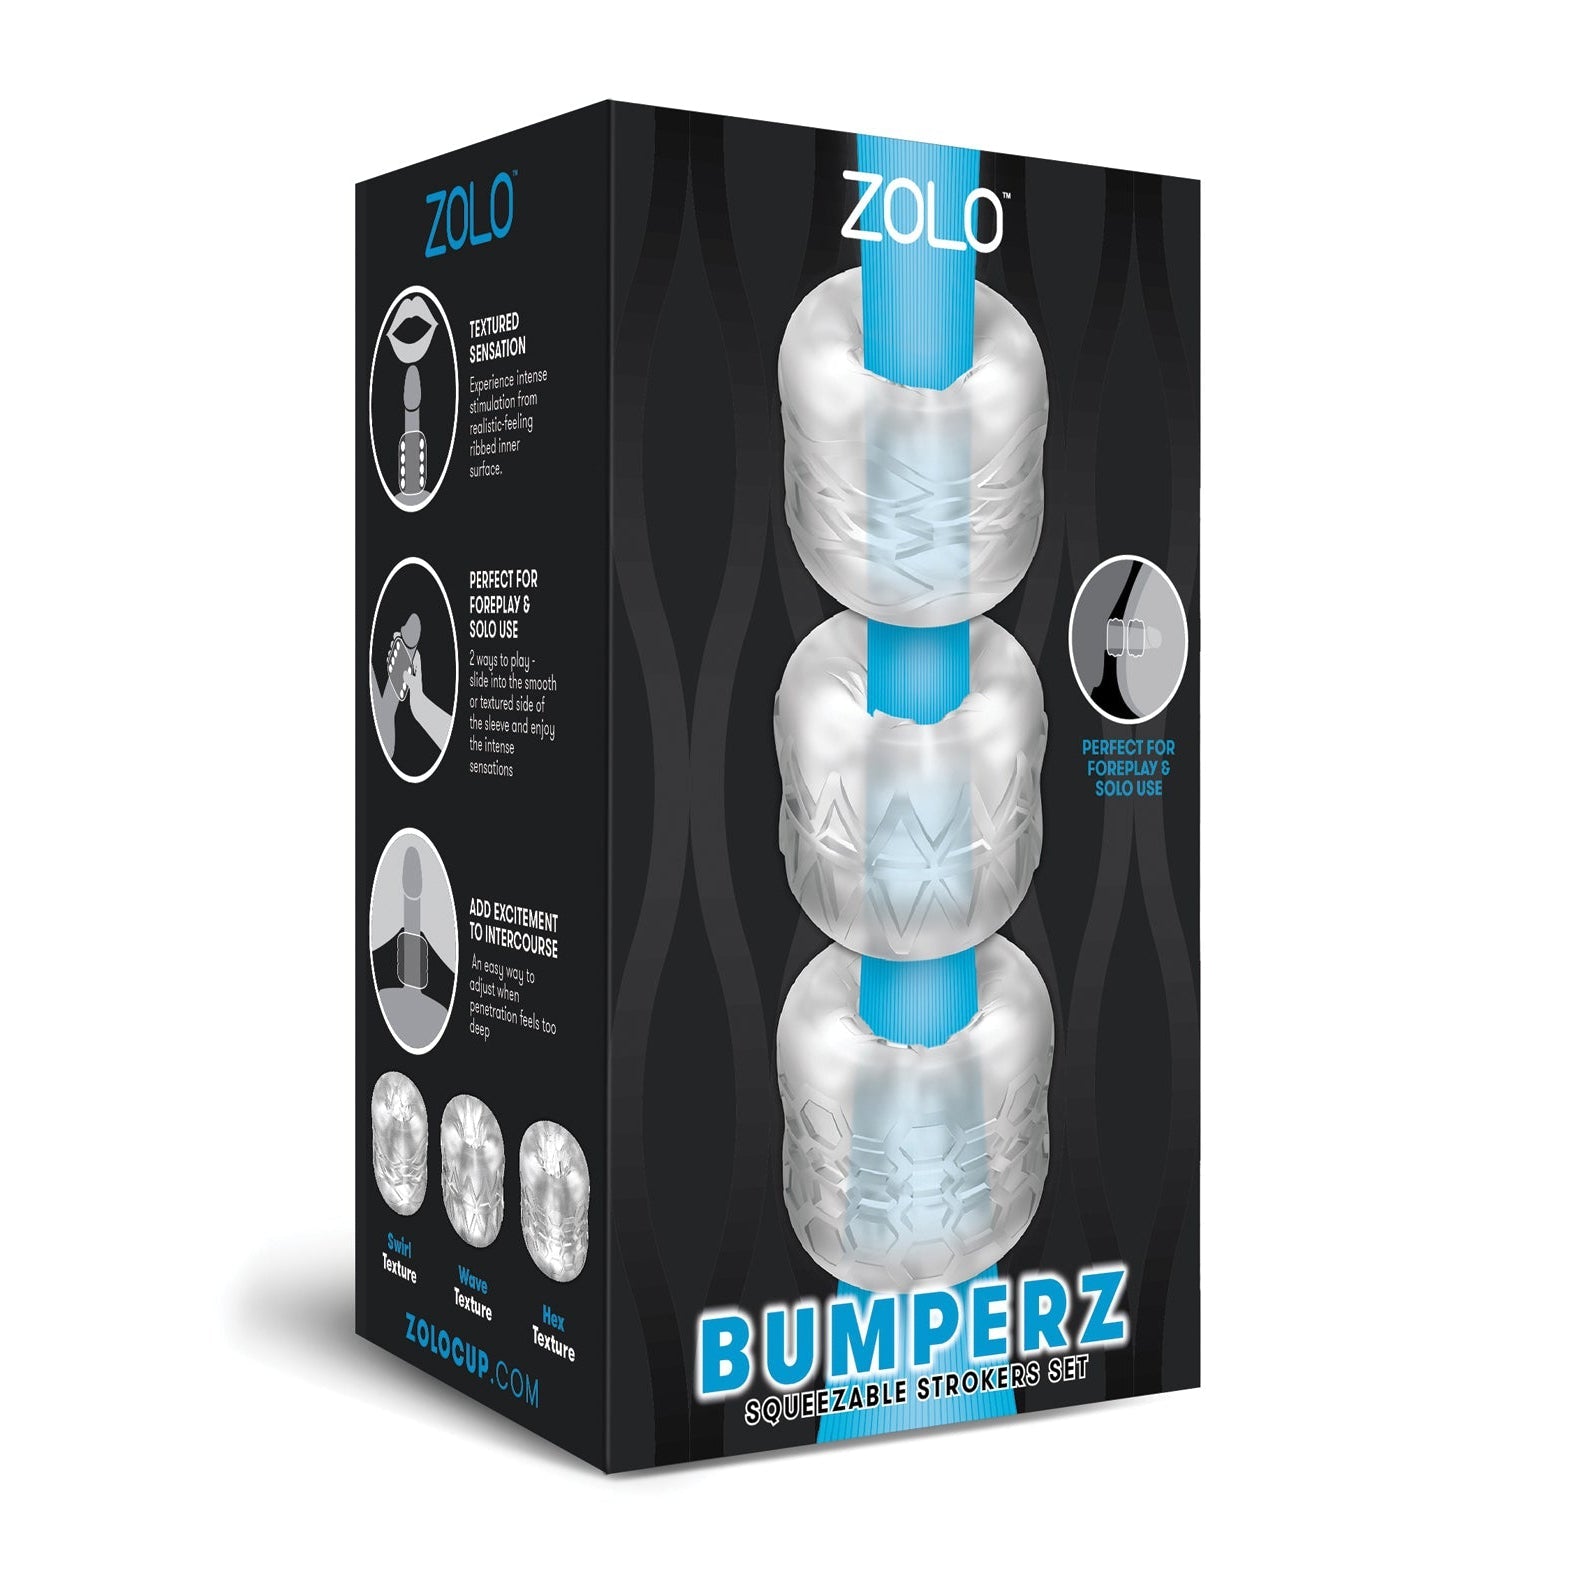 ZOLO Bumperz Squeezable Stroker Set